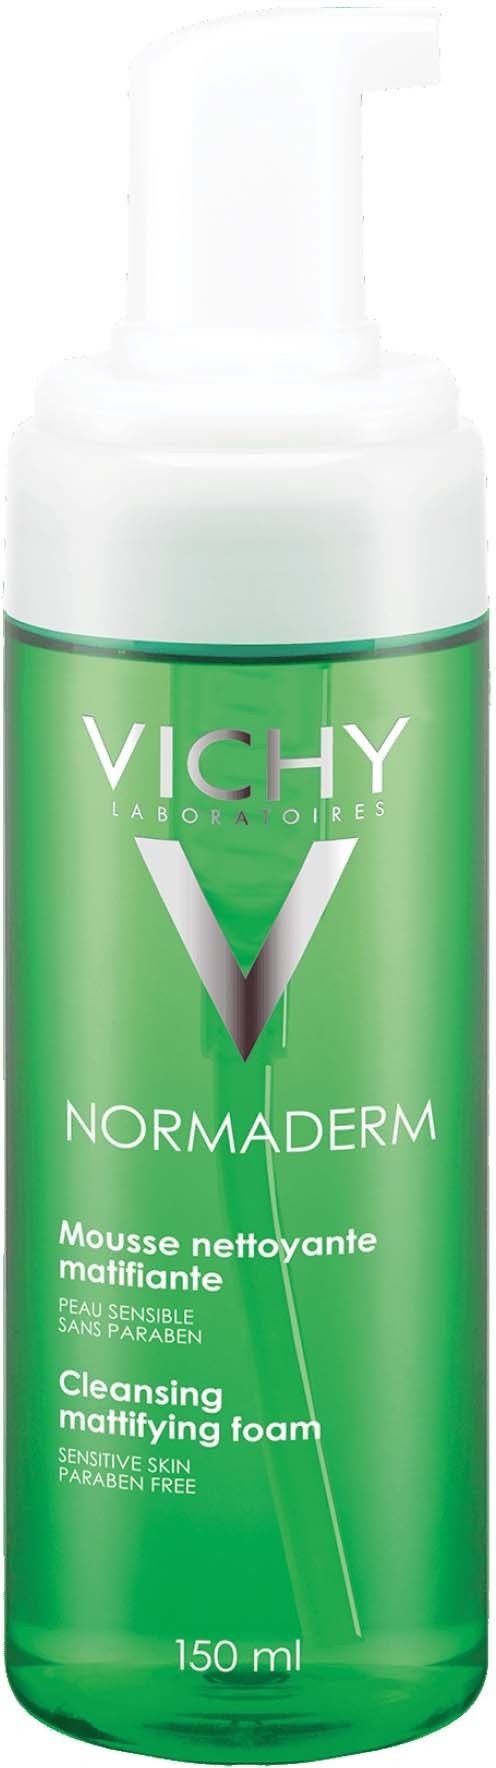 Vichy Normaderm очищающий мусс матирующий, мусс, 150 мл, 1 шт.